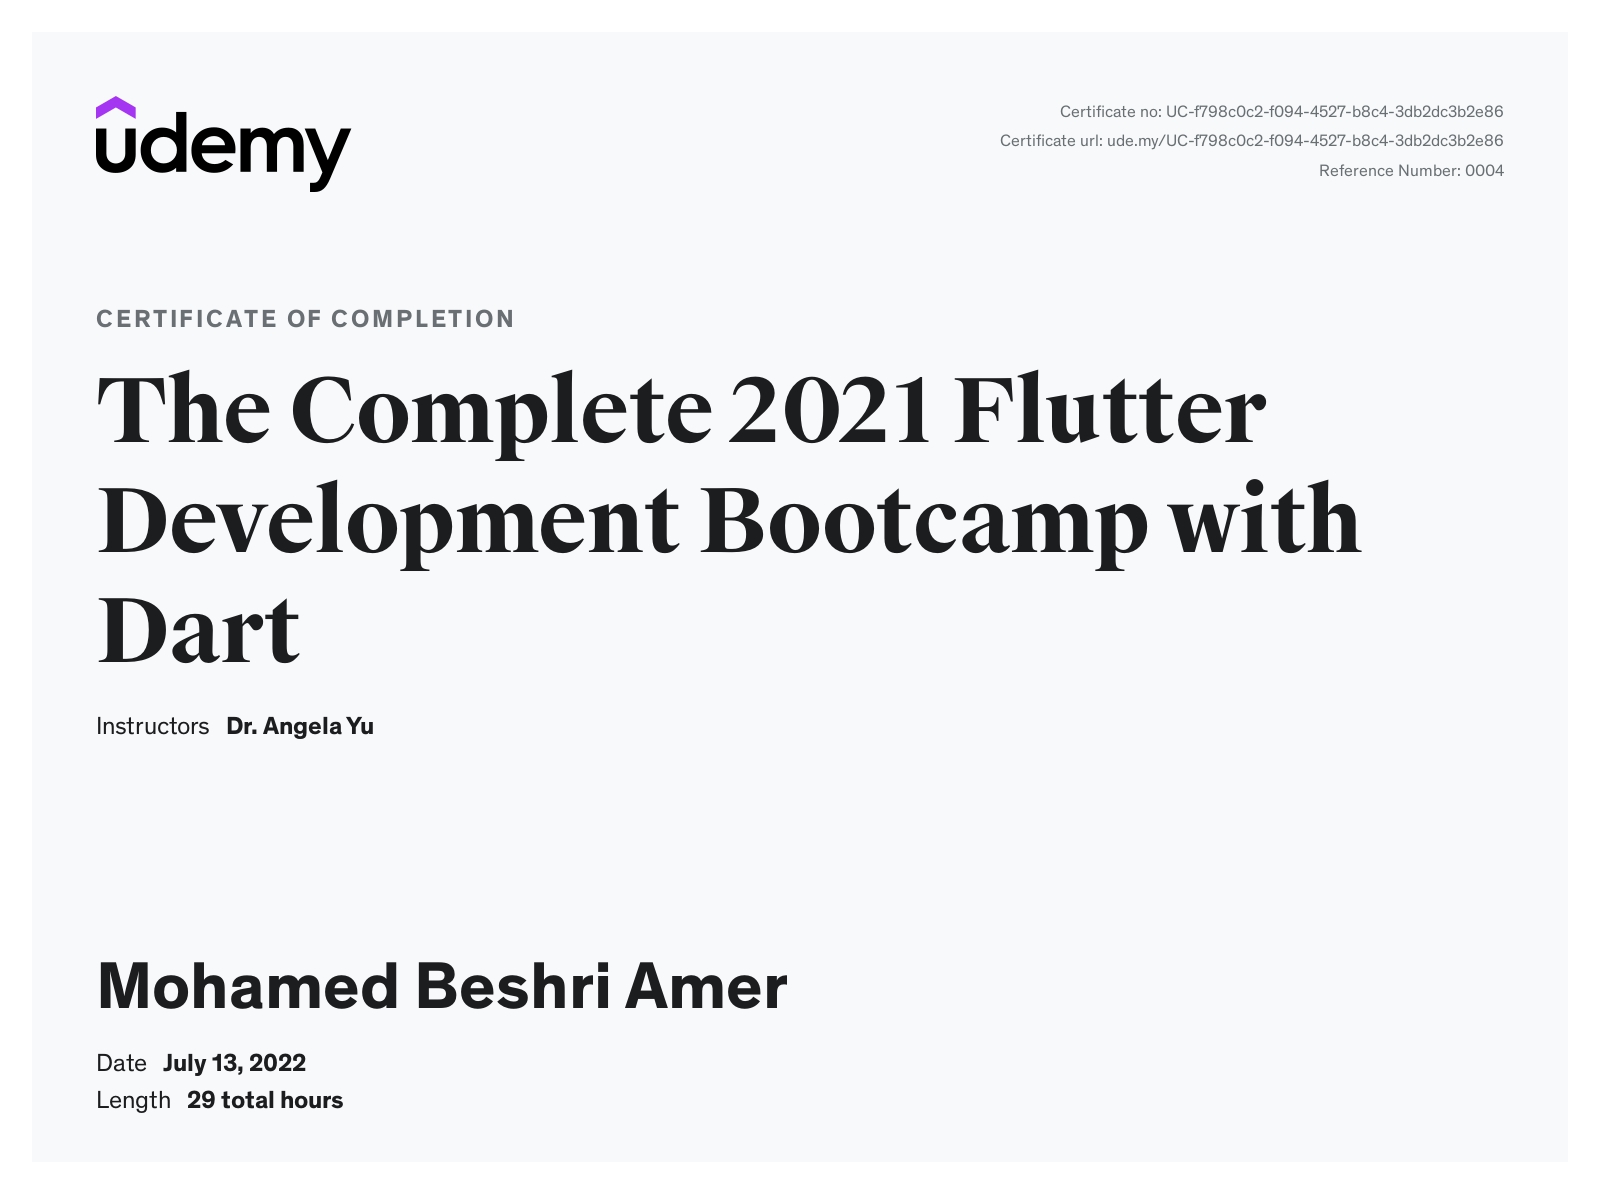 Mohamed Beshri Amer- Dart and Flutter